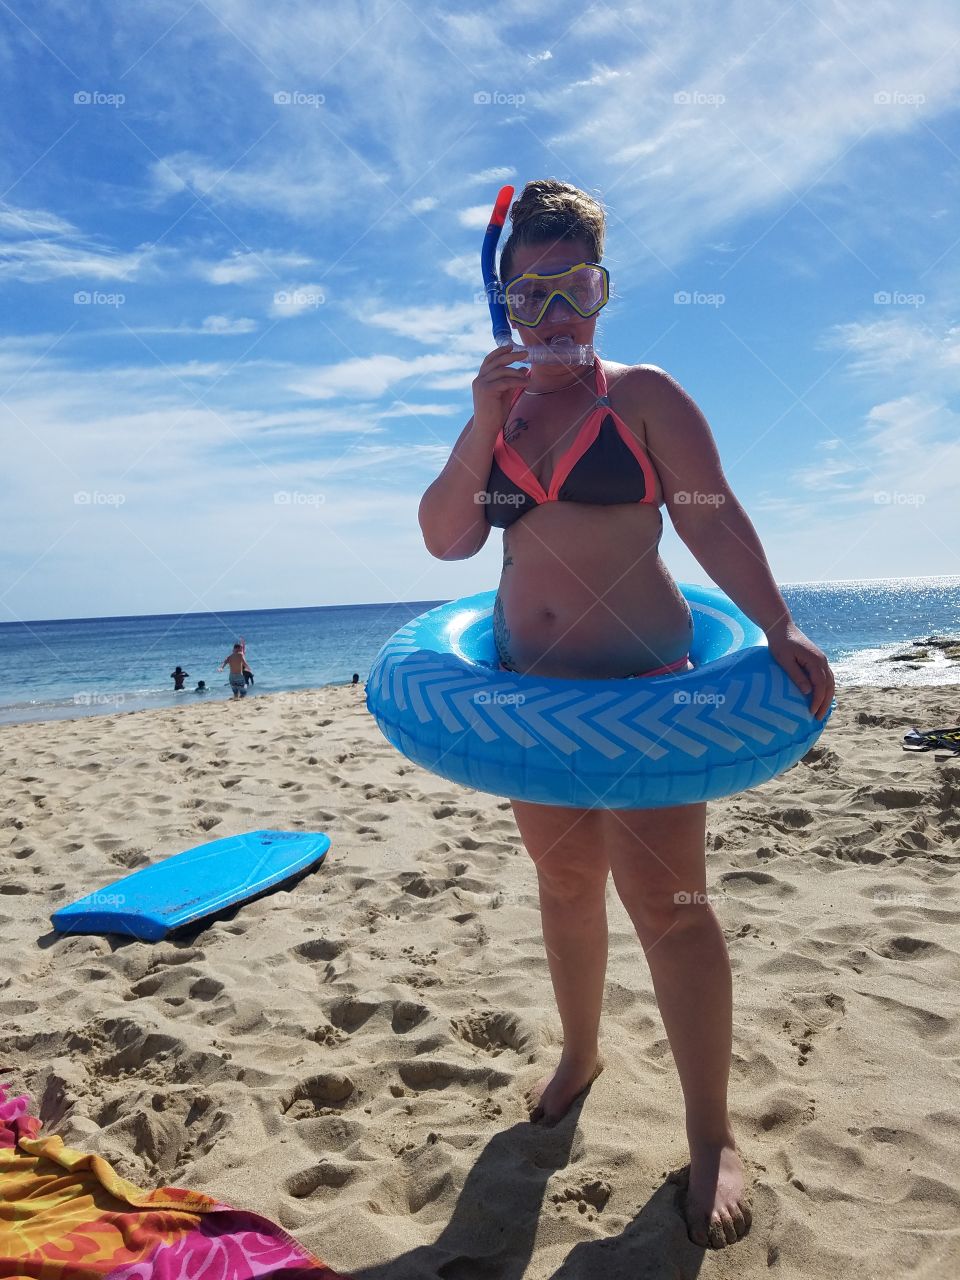 Lady on beach in snorkel gear